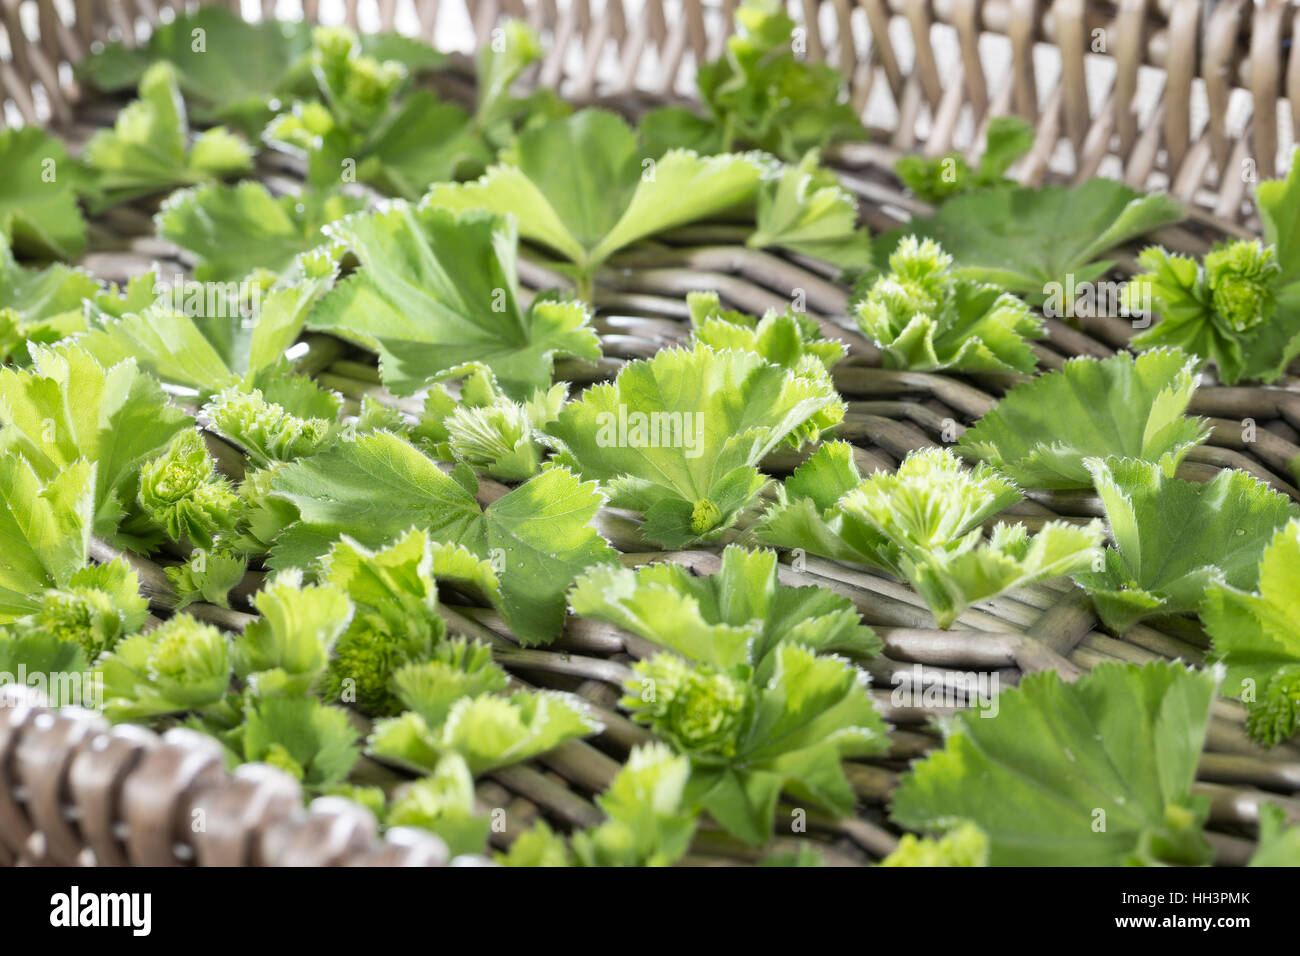 Frauenmantel, Blätter und Blüten werden auf Tablett getrocknet, Trocknung, Ernte, Frauenmantel, Alchemilla mollis Stock Photo